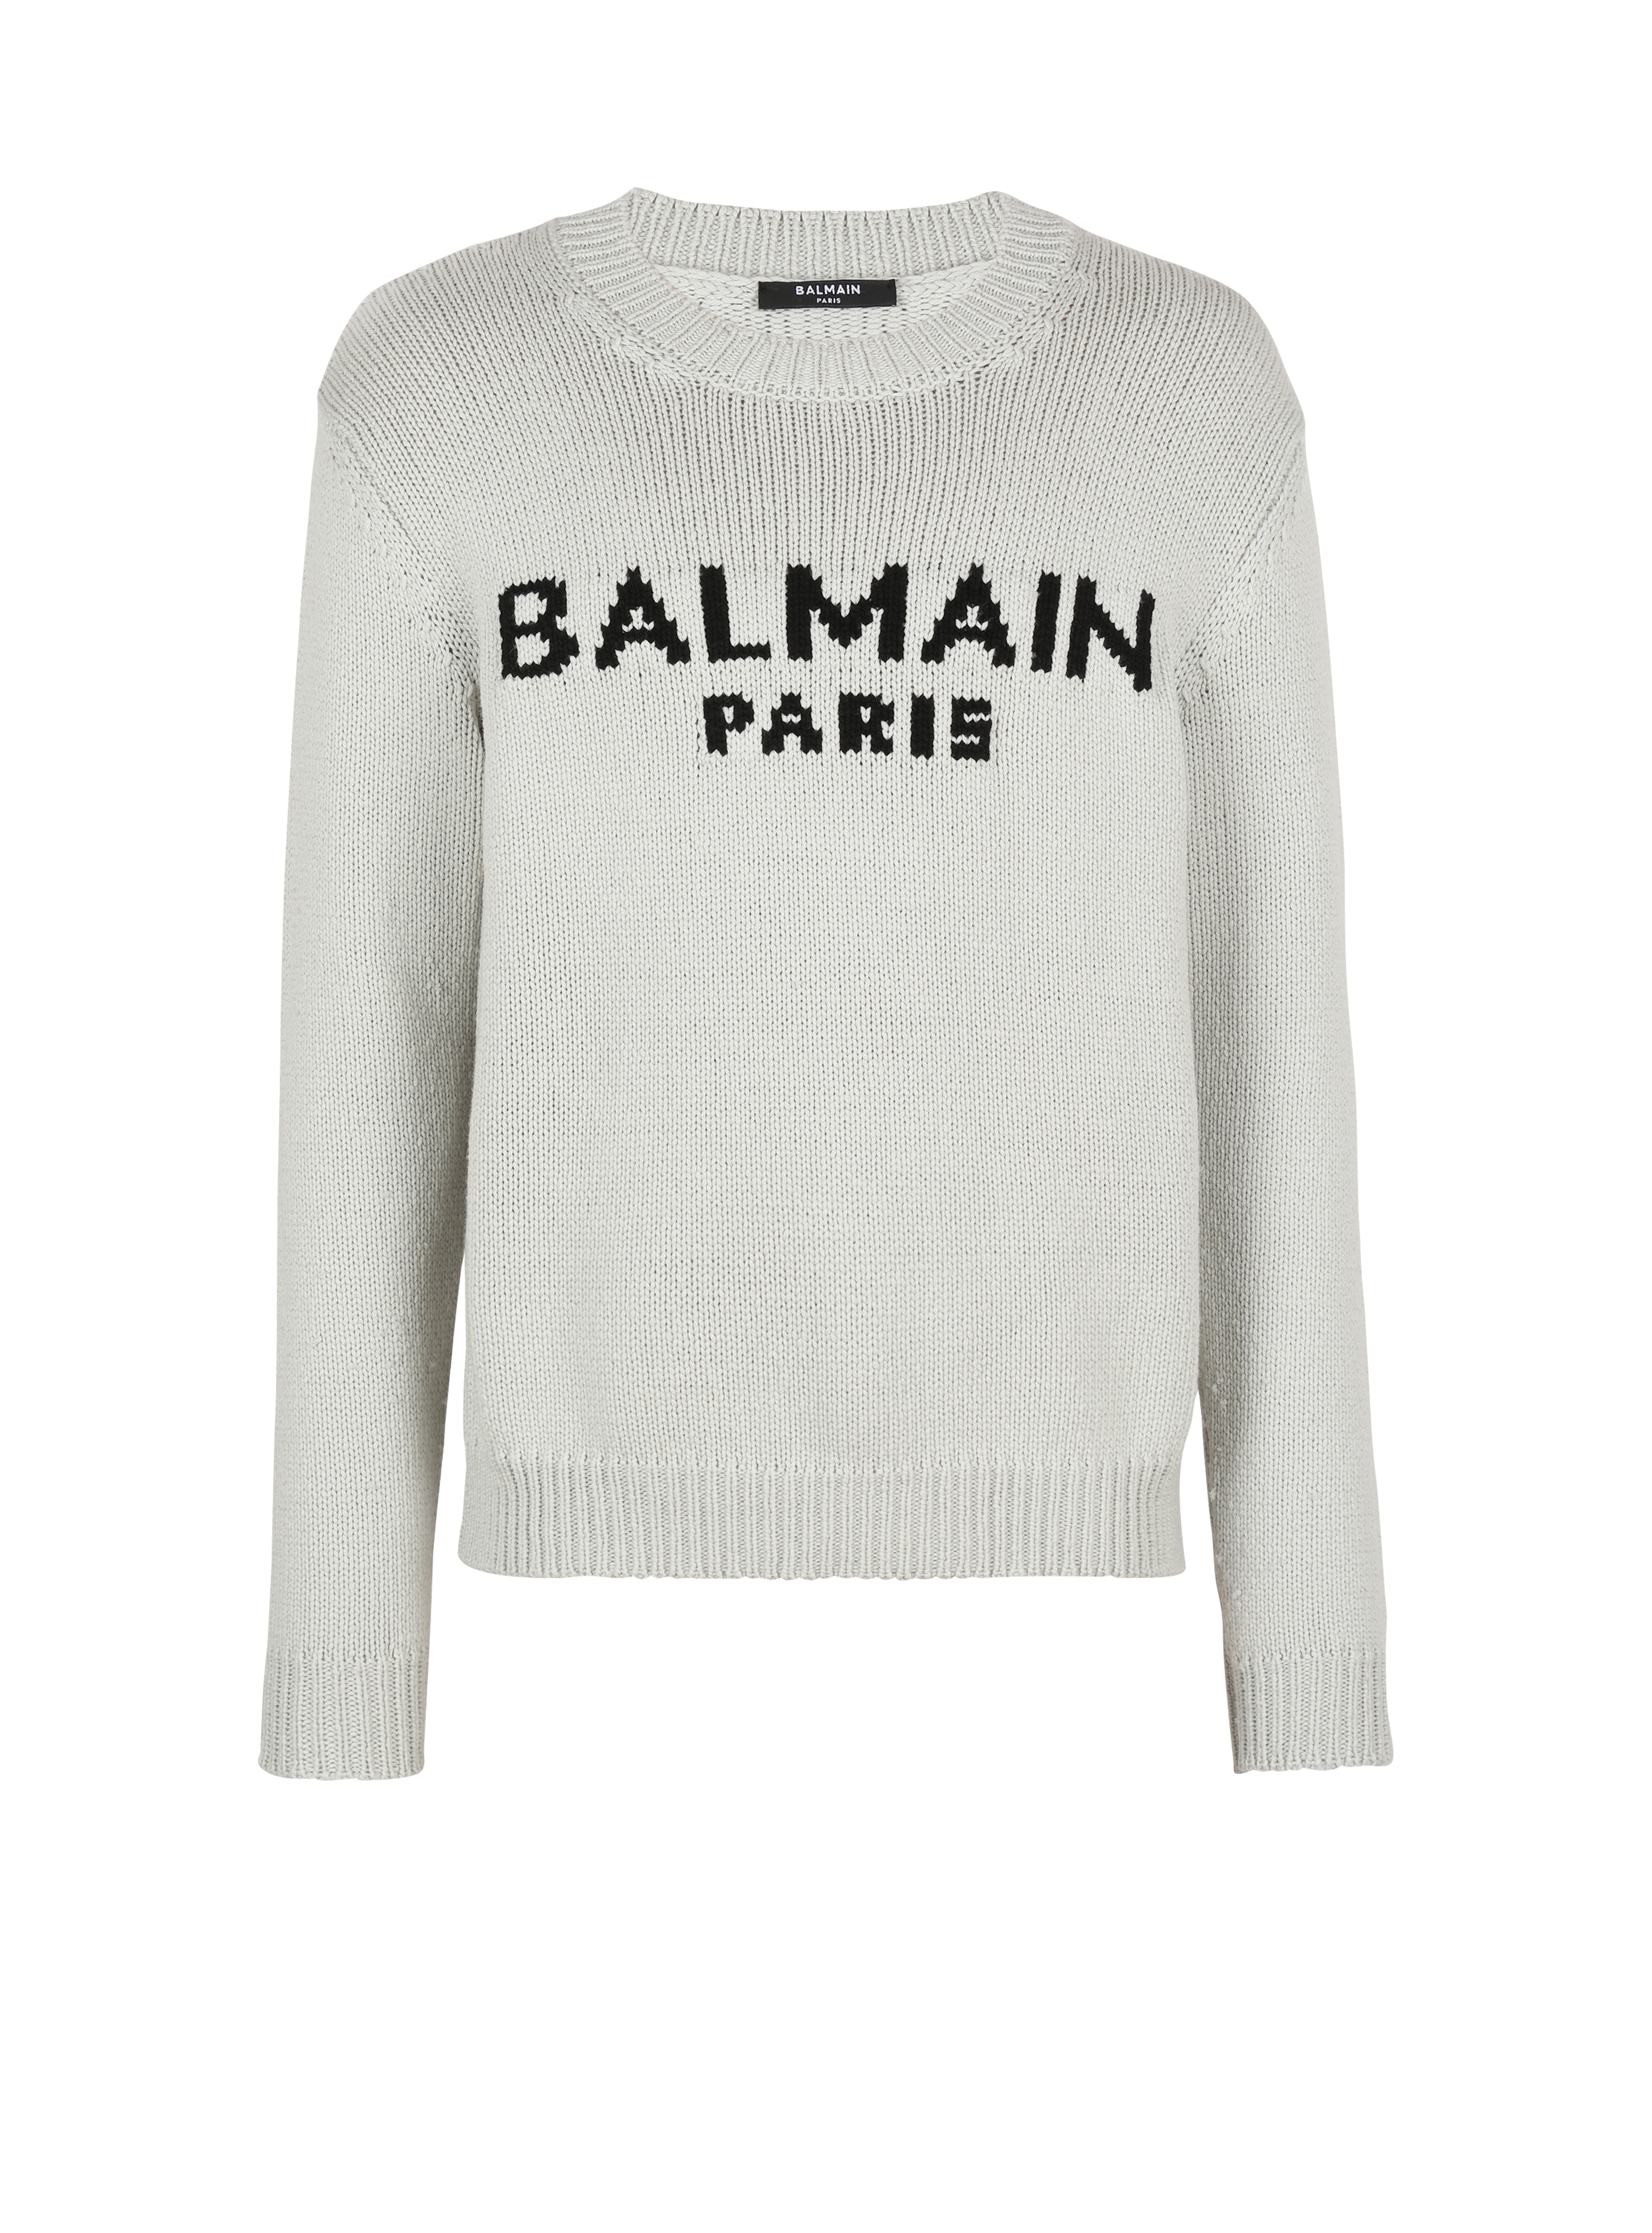 Wollpullover mit Logo von Balmain Paris, grau